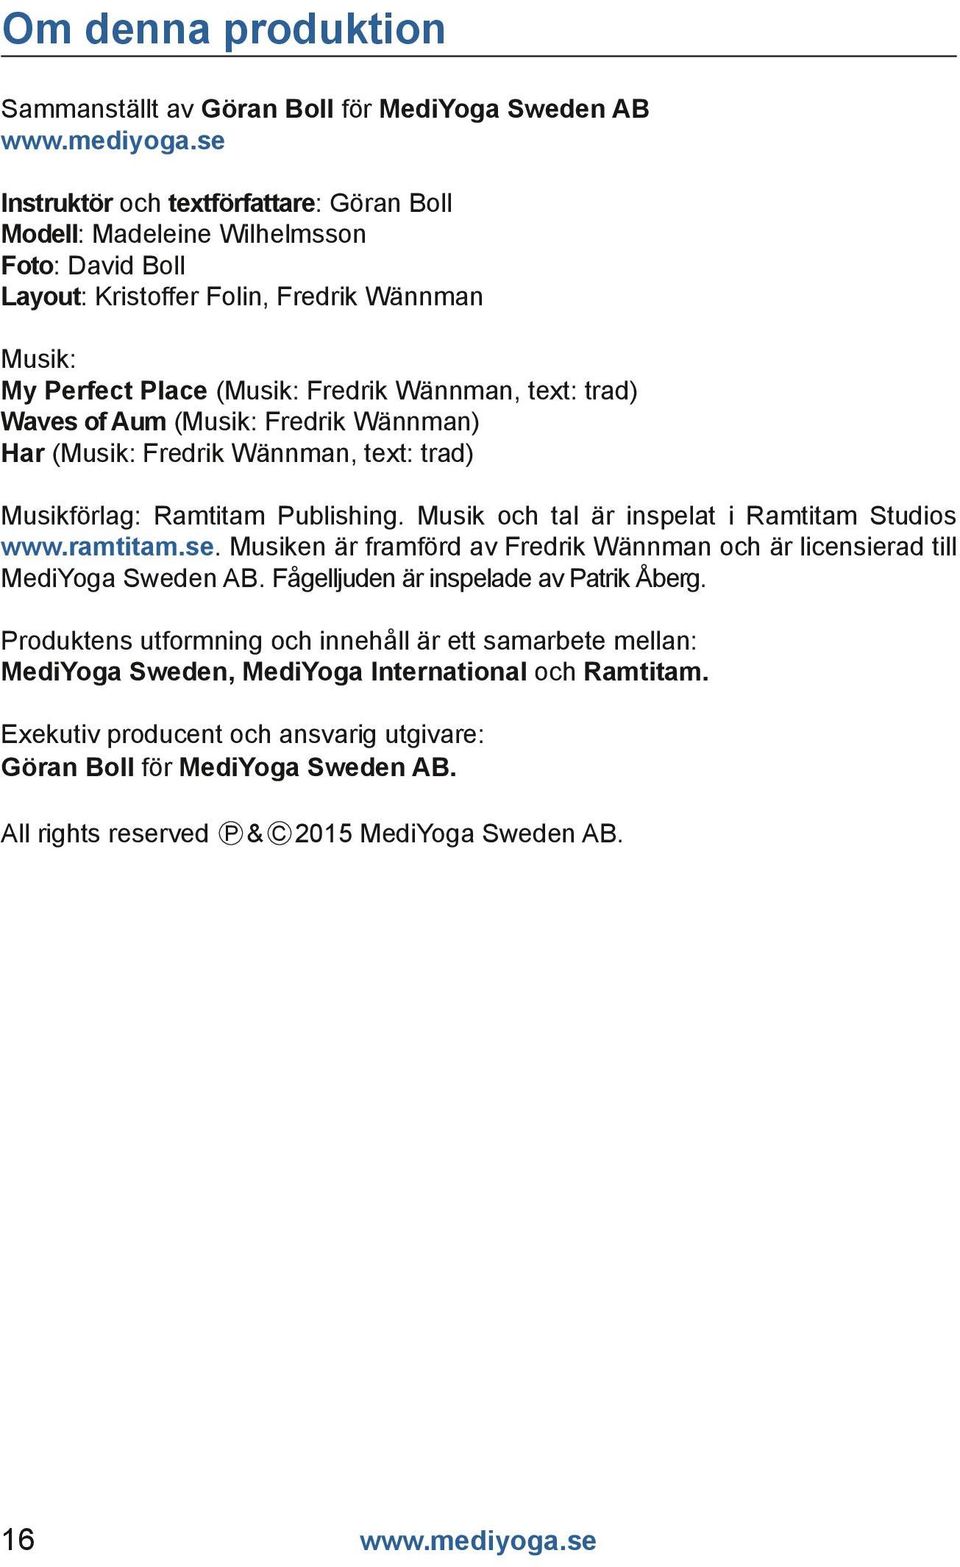 Musik och tal är inspelat i Ramtitam Studios www.ramtitam.se. Musiken är framförd av Fredrik Wännman och är licensierad till MediYoga Sweden AB. Fågelljuden är inspelade av Patrik Åberg.